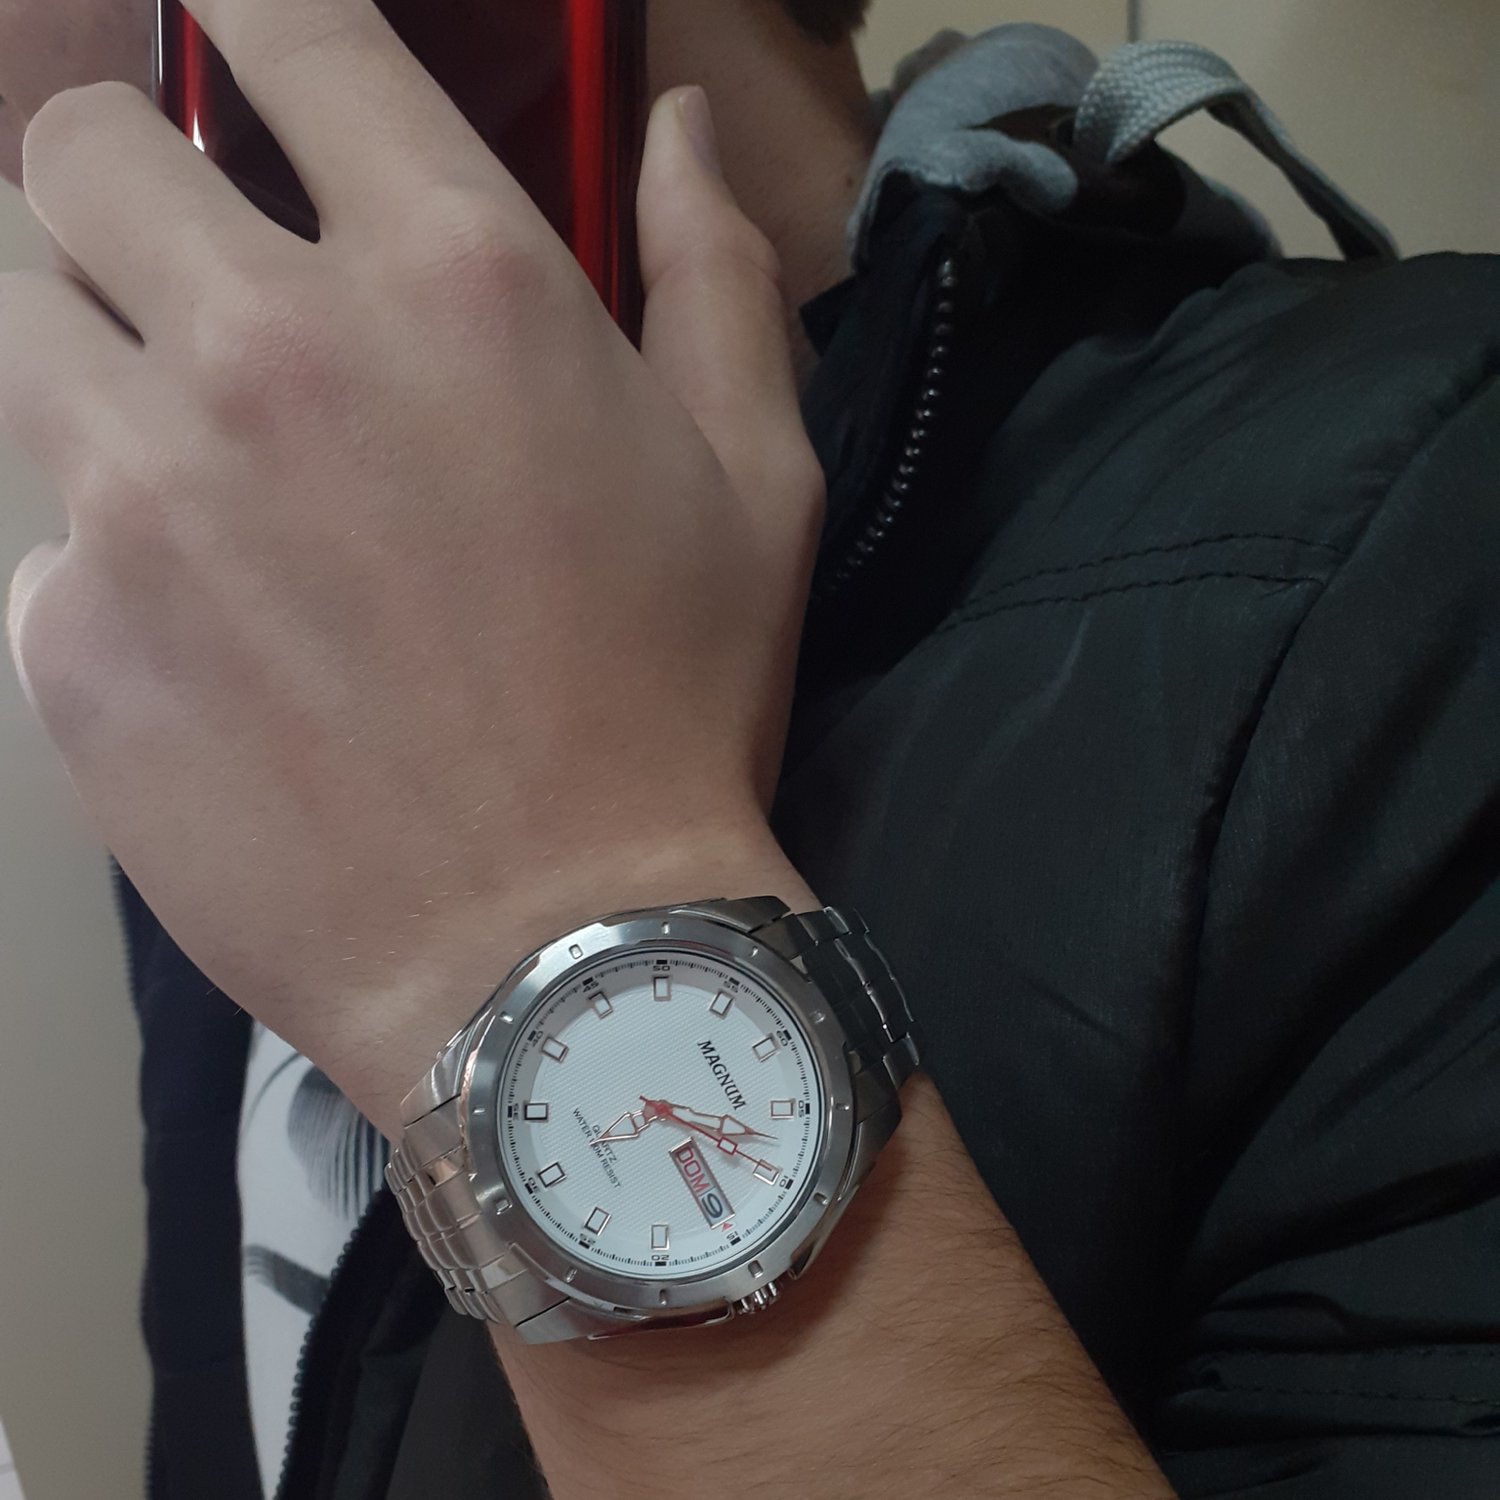 Relógio Magnum Masculino Aço Calendário - Relojoaria e Ótica Suiça